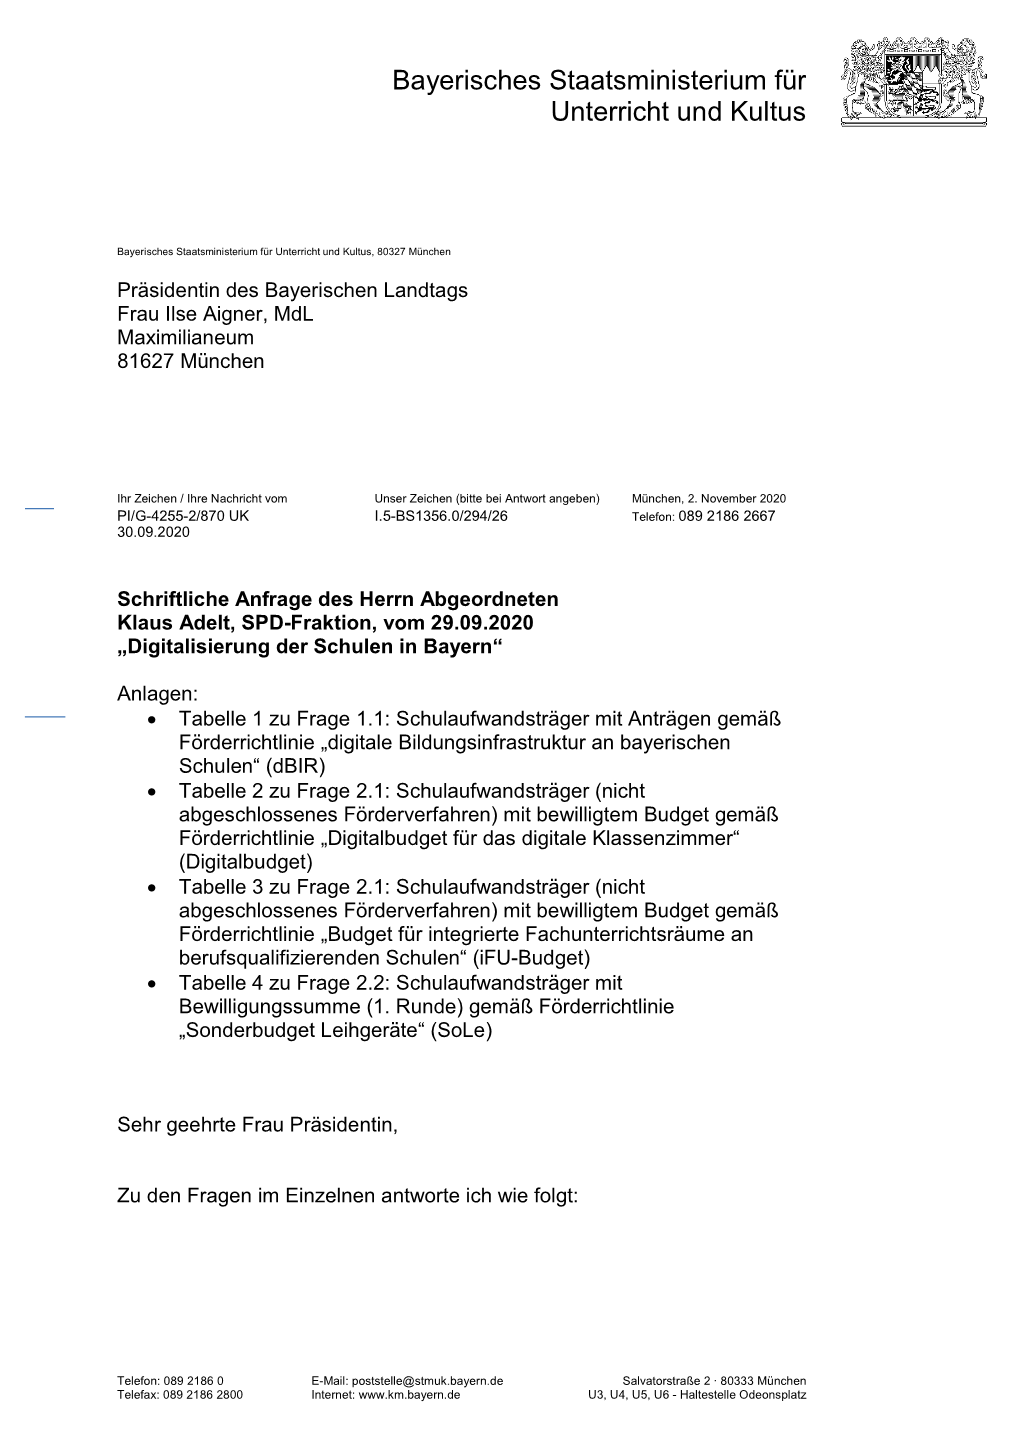 Anfrage Des Herrn Abgeordneten Klaus Adelt, SPD-Fraktion, Vom 29.09.2020 „Digitalisierung Der Schulen in Bayern“